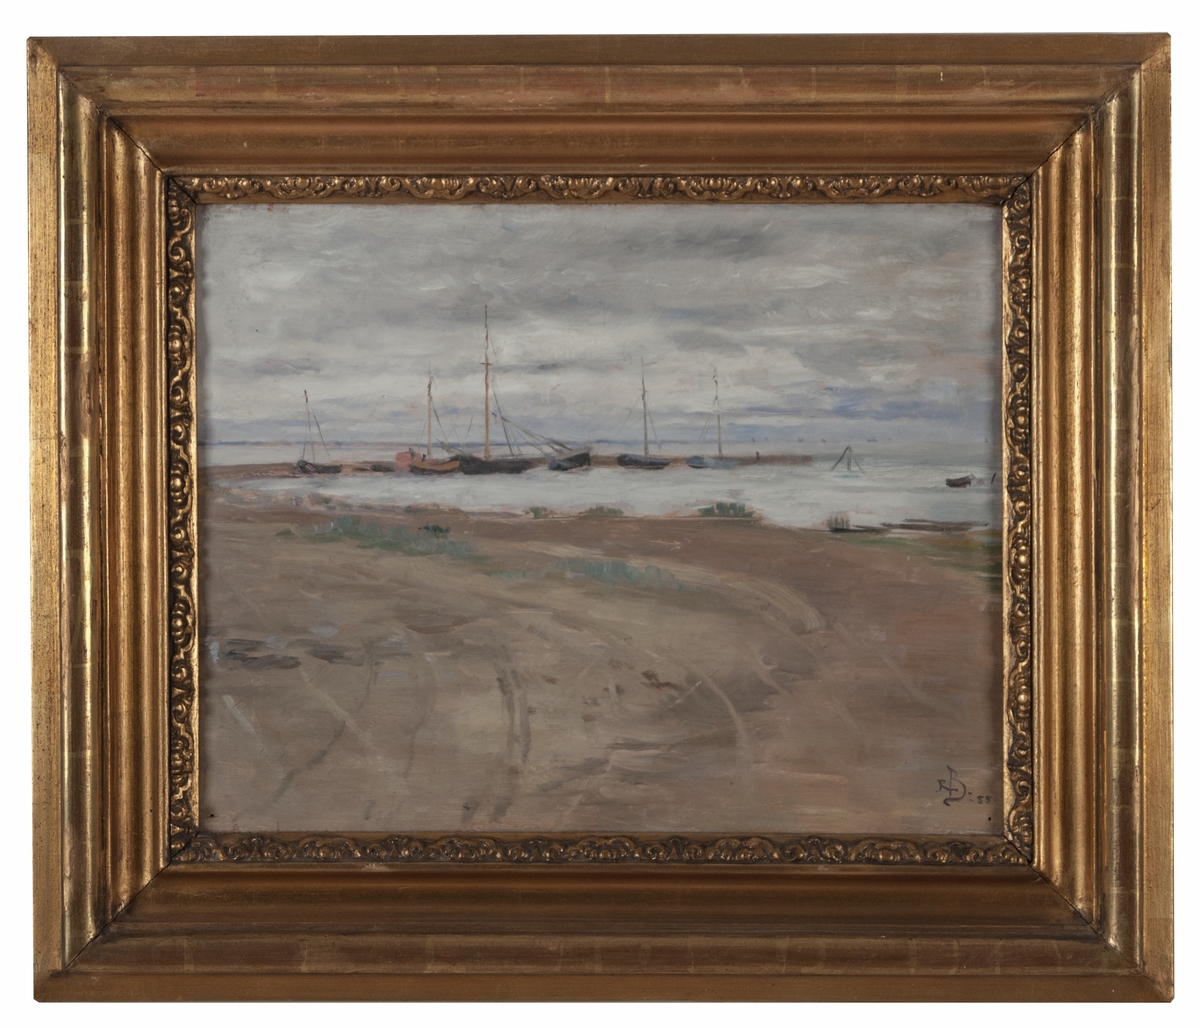 Oljemålning på träpannå, "Strandlandskap", troligen Frankrike, av Rickard Bergh. Sandstrand, vågbrytare med några fiskekuttrar förtöjda. Gråblå molning himmel. Förgylld ram.